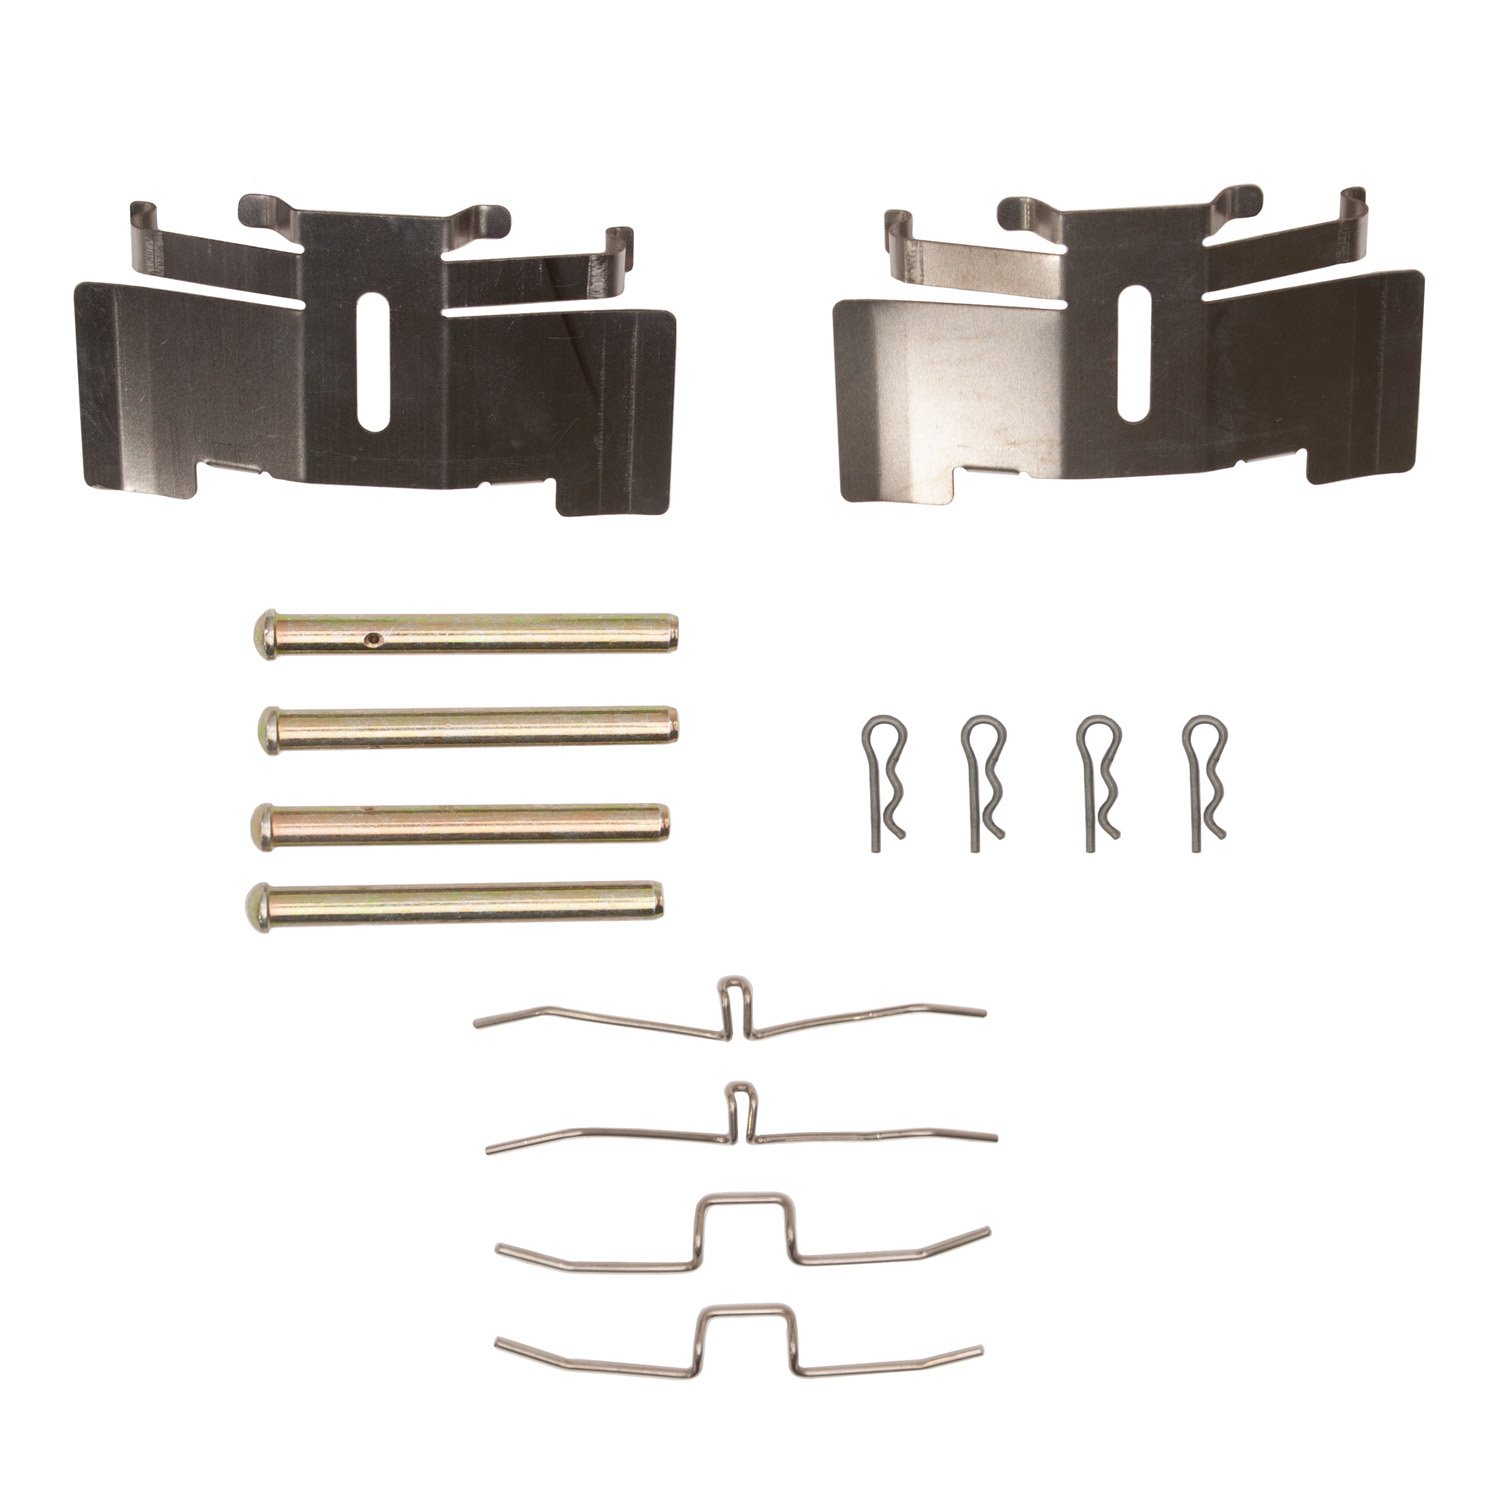 Disc Brake Hardware Kit, 1971-1987 Fits Multiple Makes/Models, Position: Front